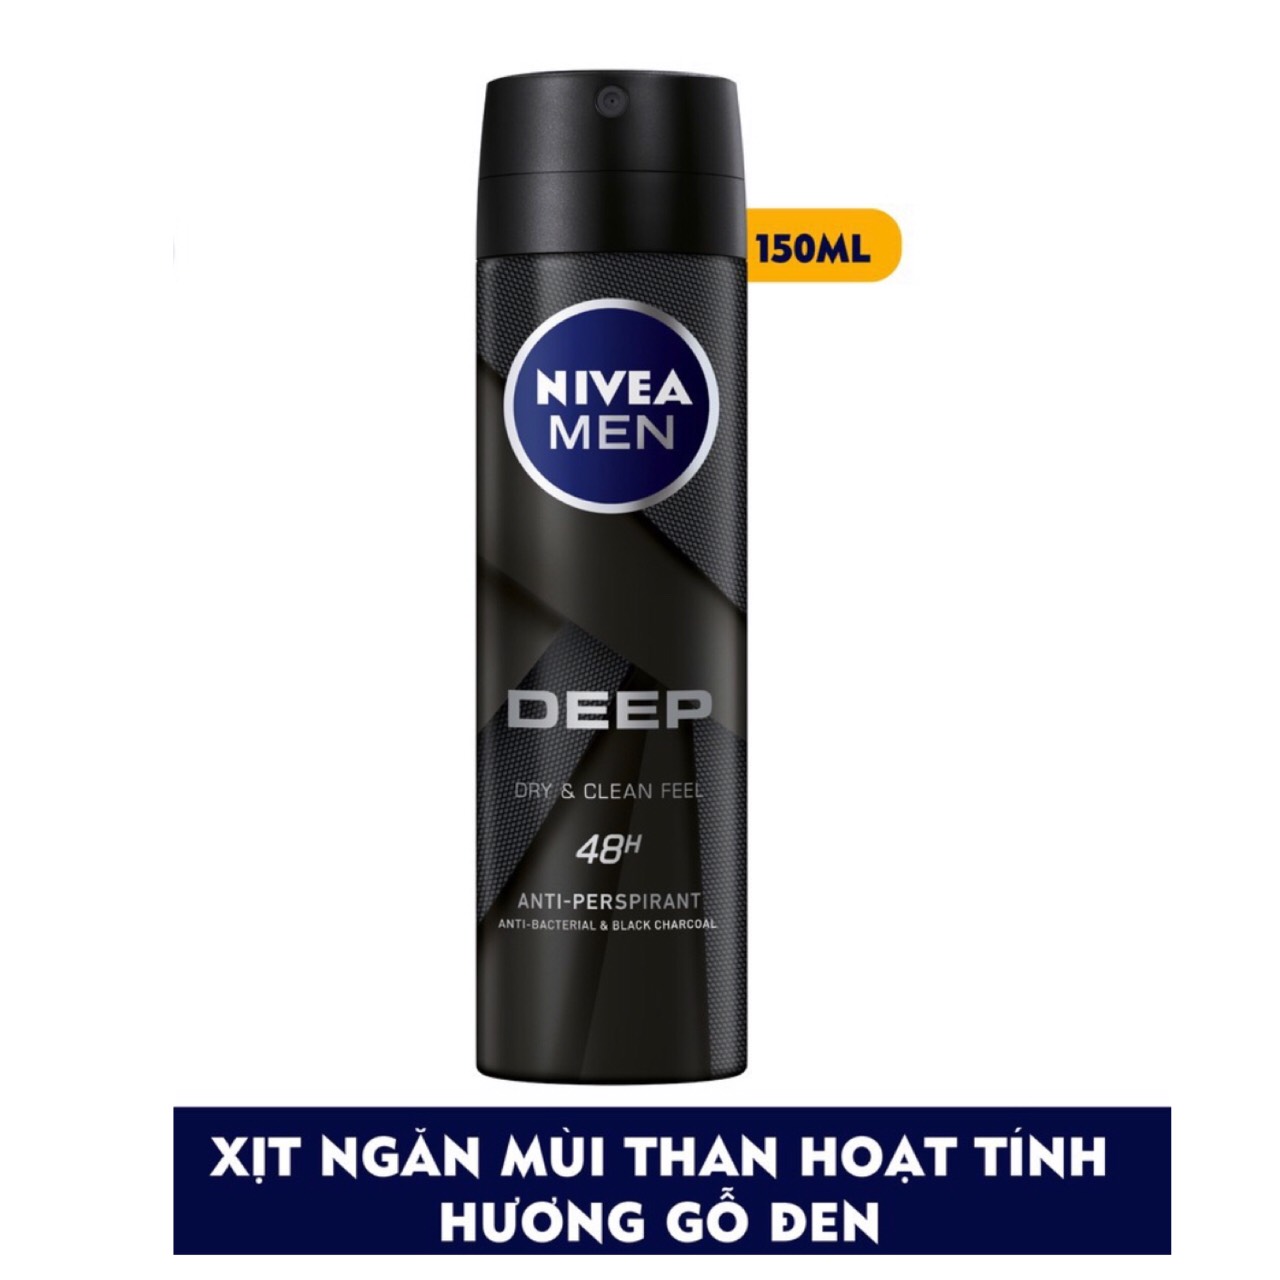 Bộ Đôi Xịt ngăn mùi NIVEA MEN Deep than đen hoạt tính 150ml và Lăn ngăn mùi NIVEA MEN Deep than đen hoạt tính 50ml